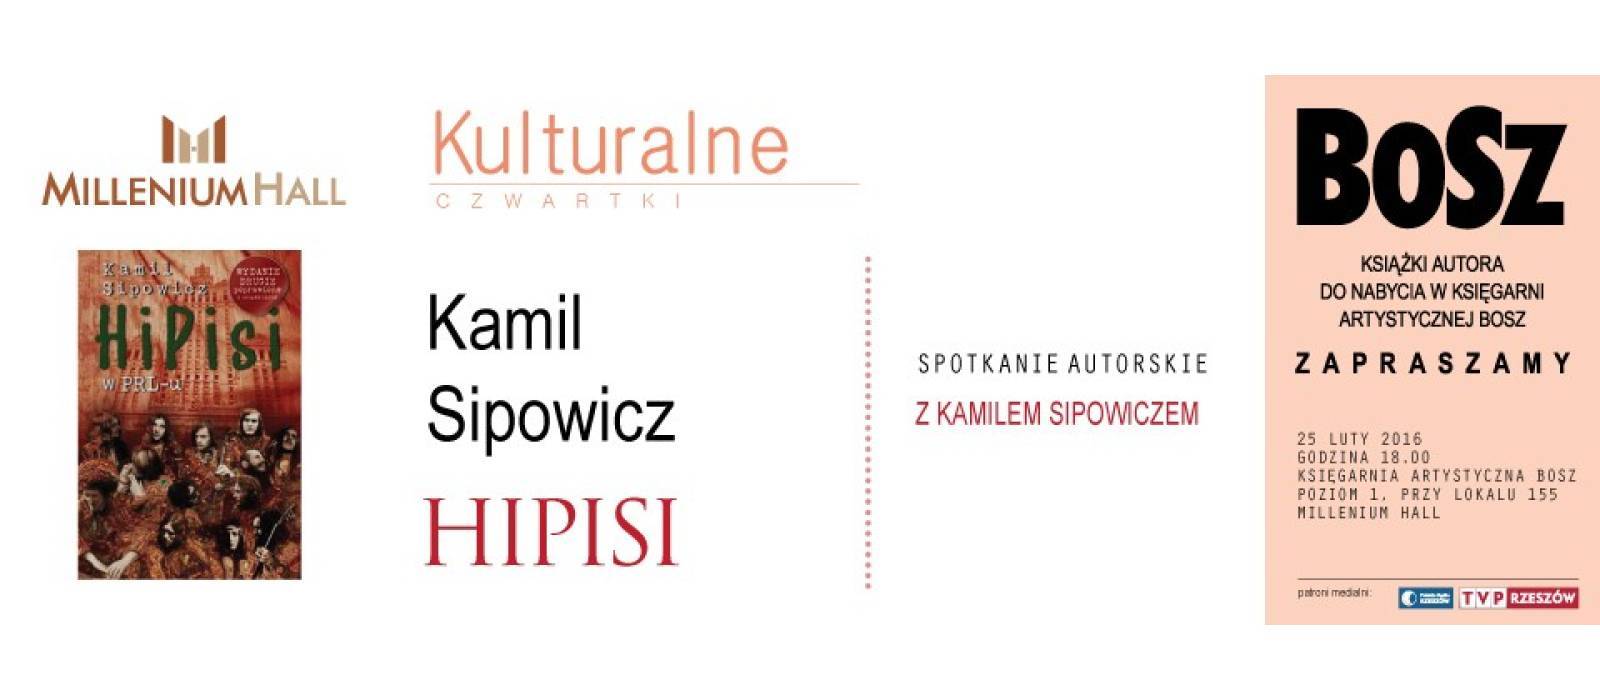 Kulturalny czwartek - Kamil Sipowicz - 1